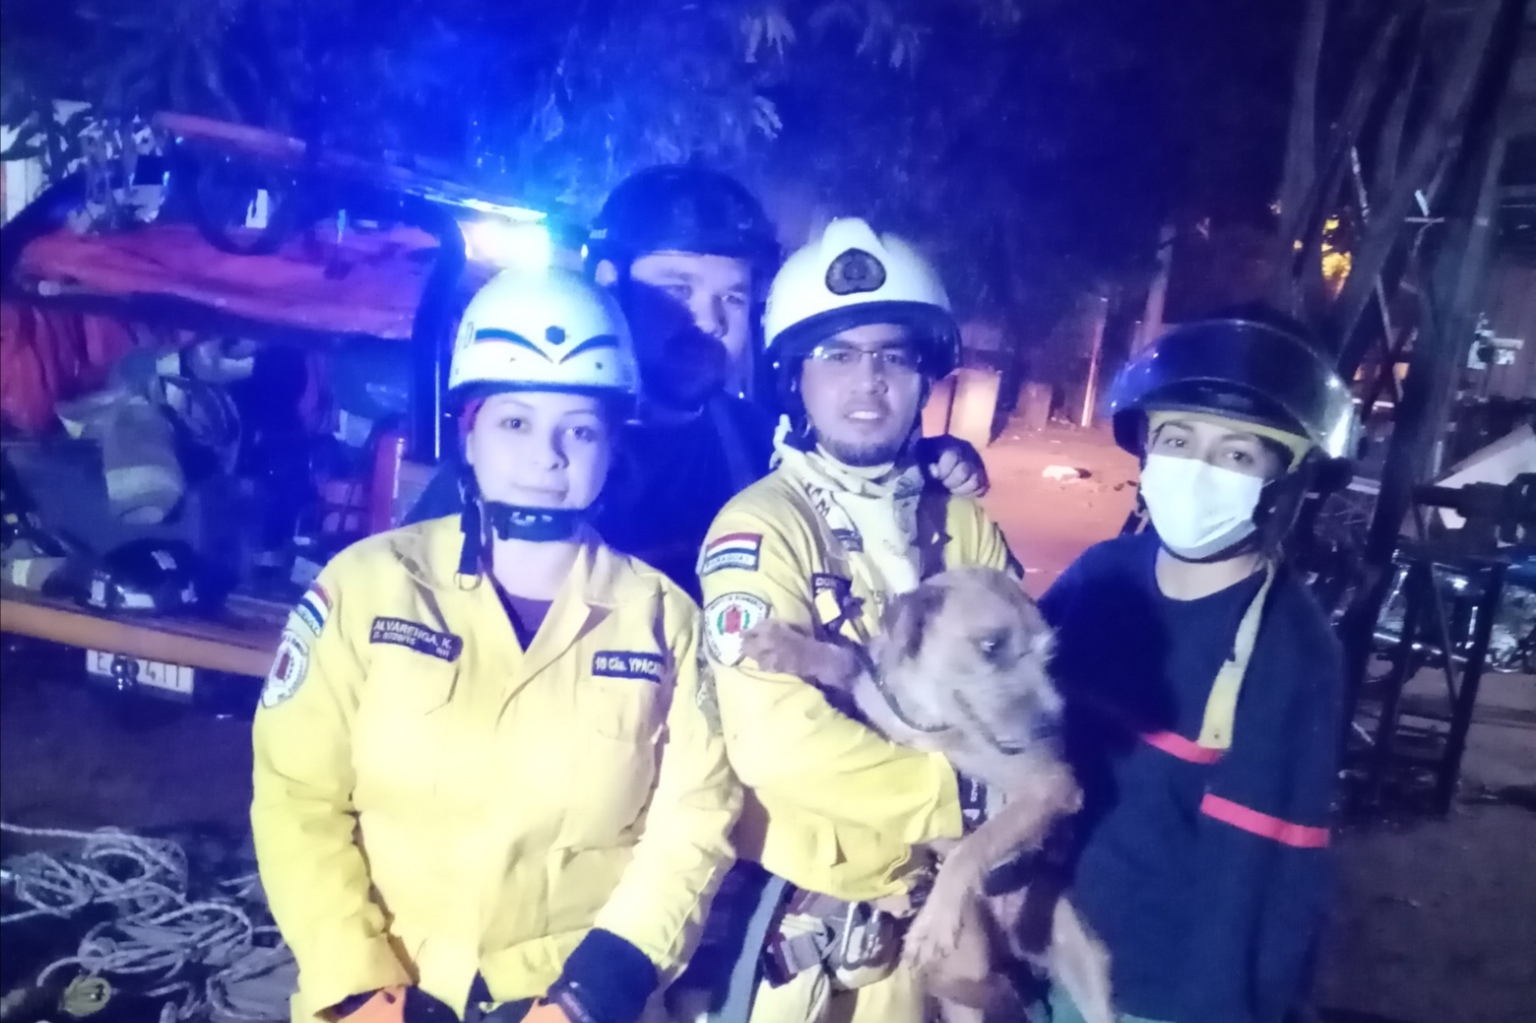 Sin heridas de consideración, el can volvió con su familia luego de ser mimado por los voluntarios. Foto: Gentileza